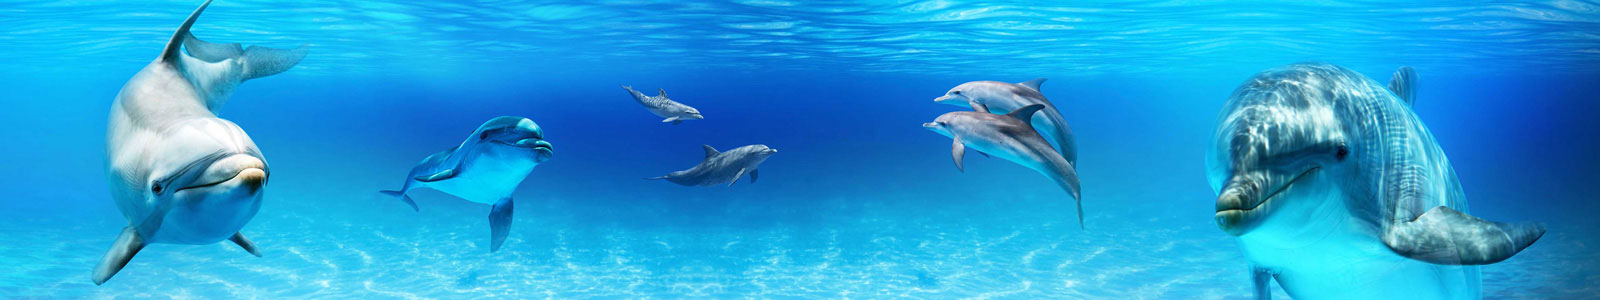 №6294 - Дельфины под водой